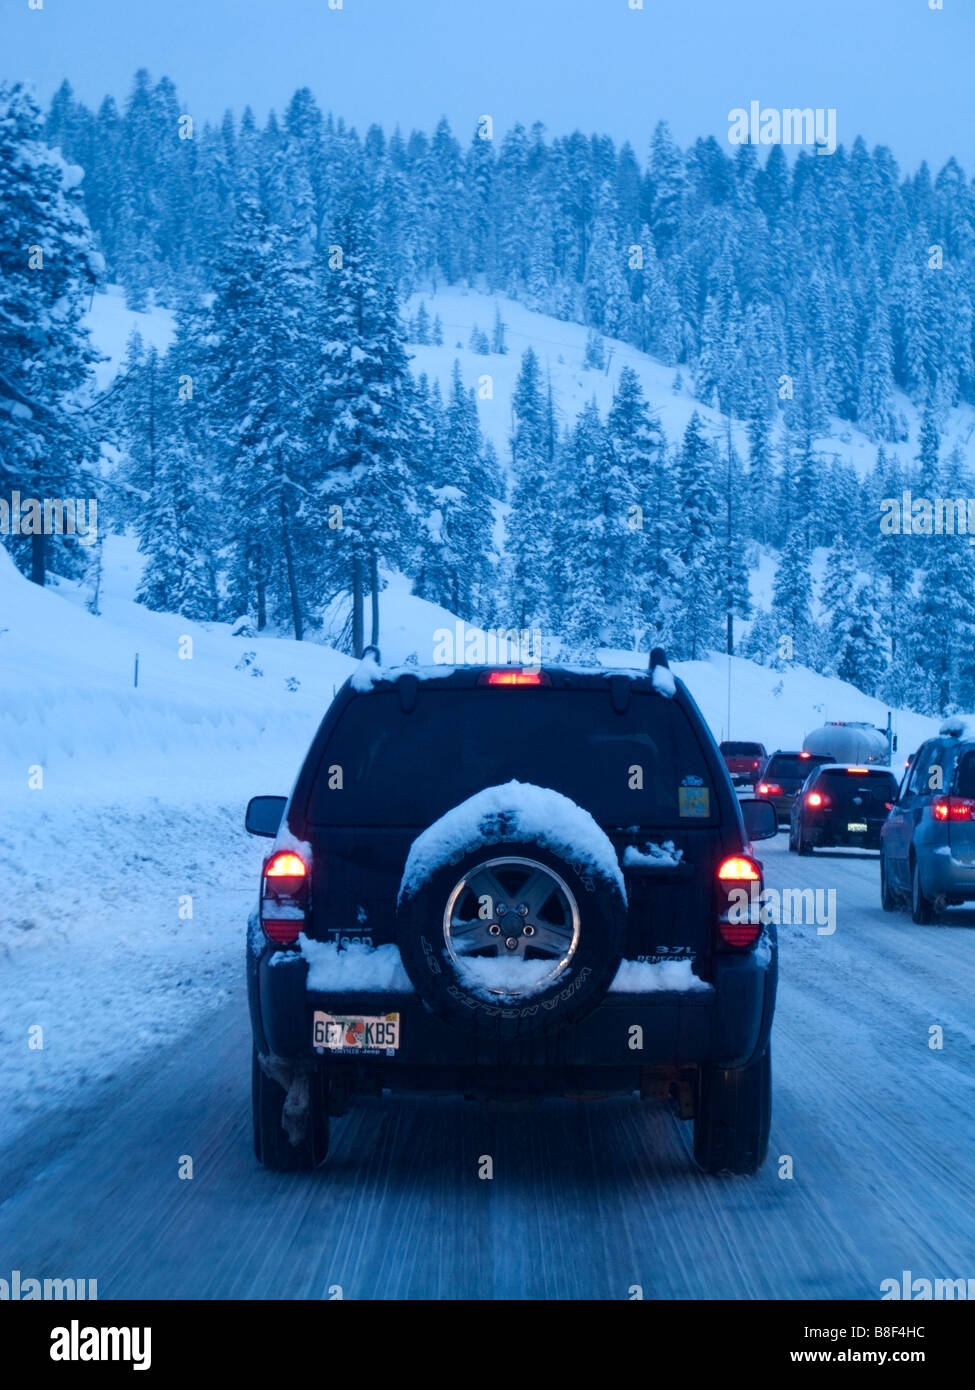 En hiver vus sur un trafic aux États-Unis couvertes de neige de l'Interstate 80 à Donner Pass de Lake Tahoe ski à la S.F. Bay Area Banque D'Images